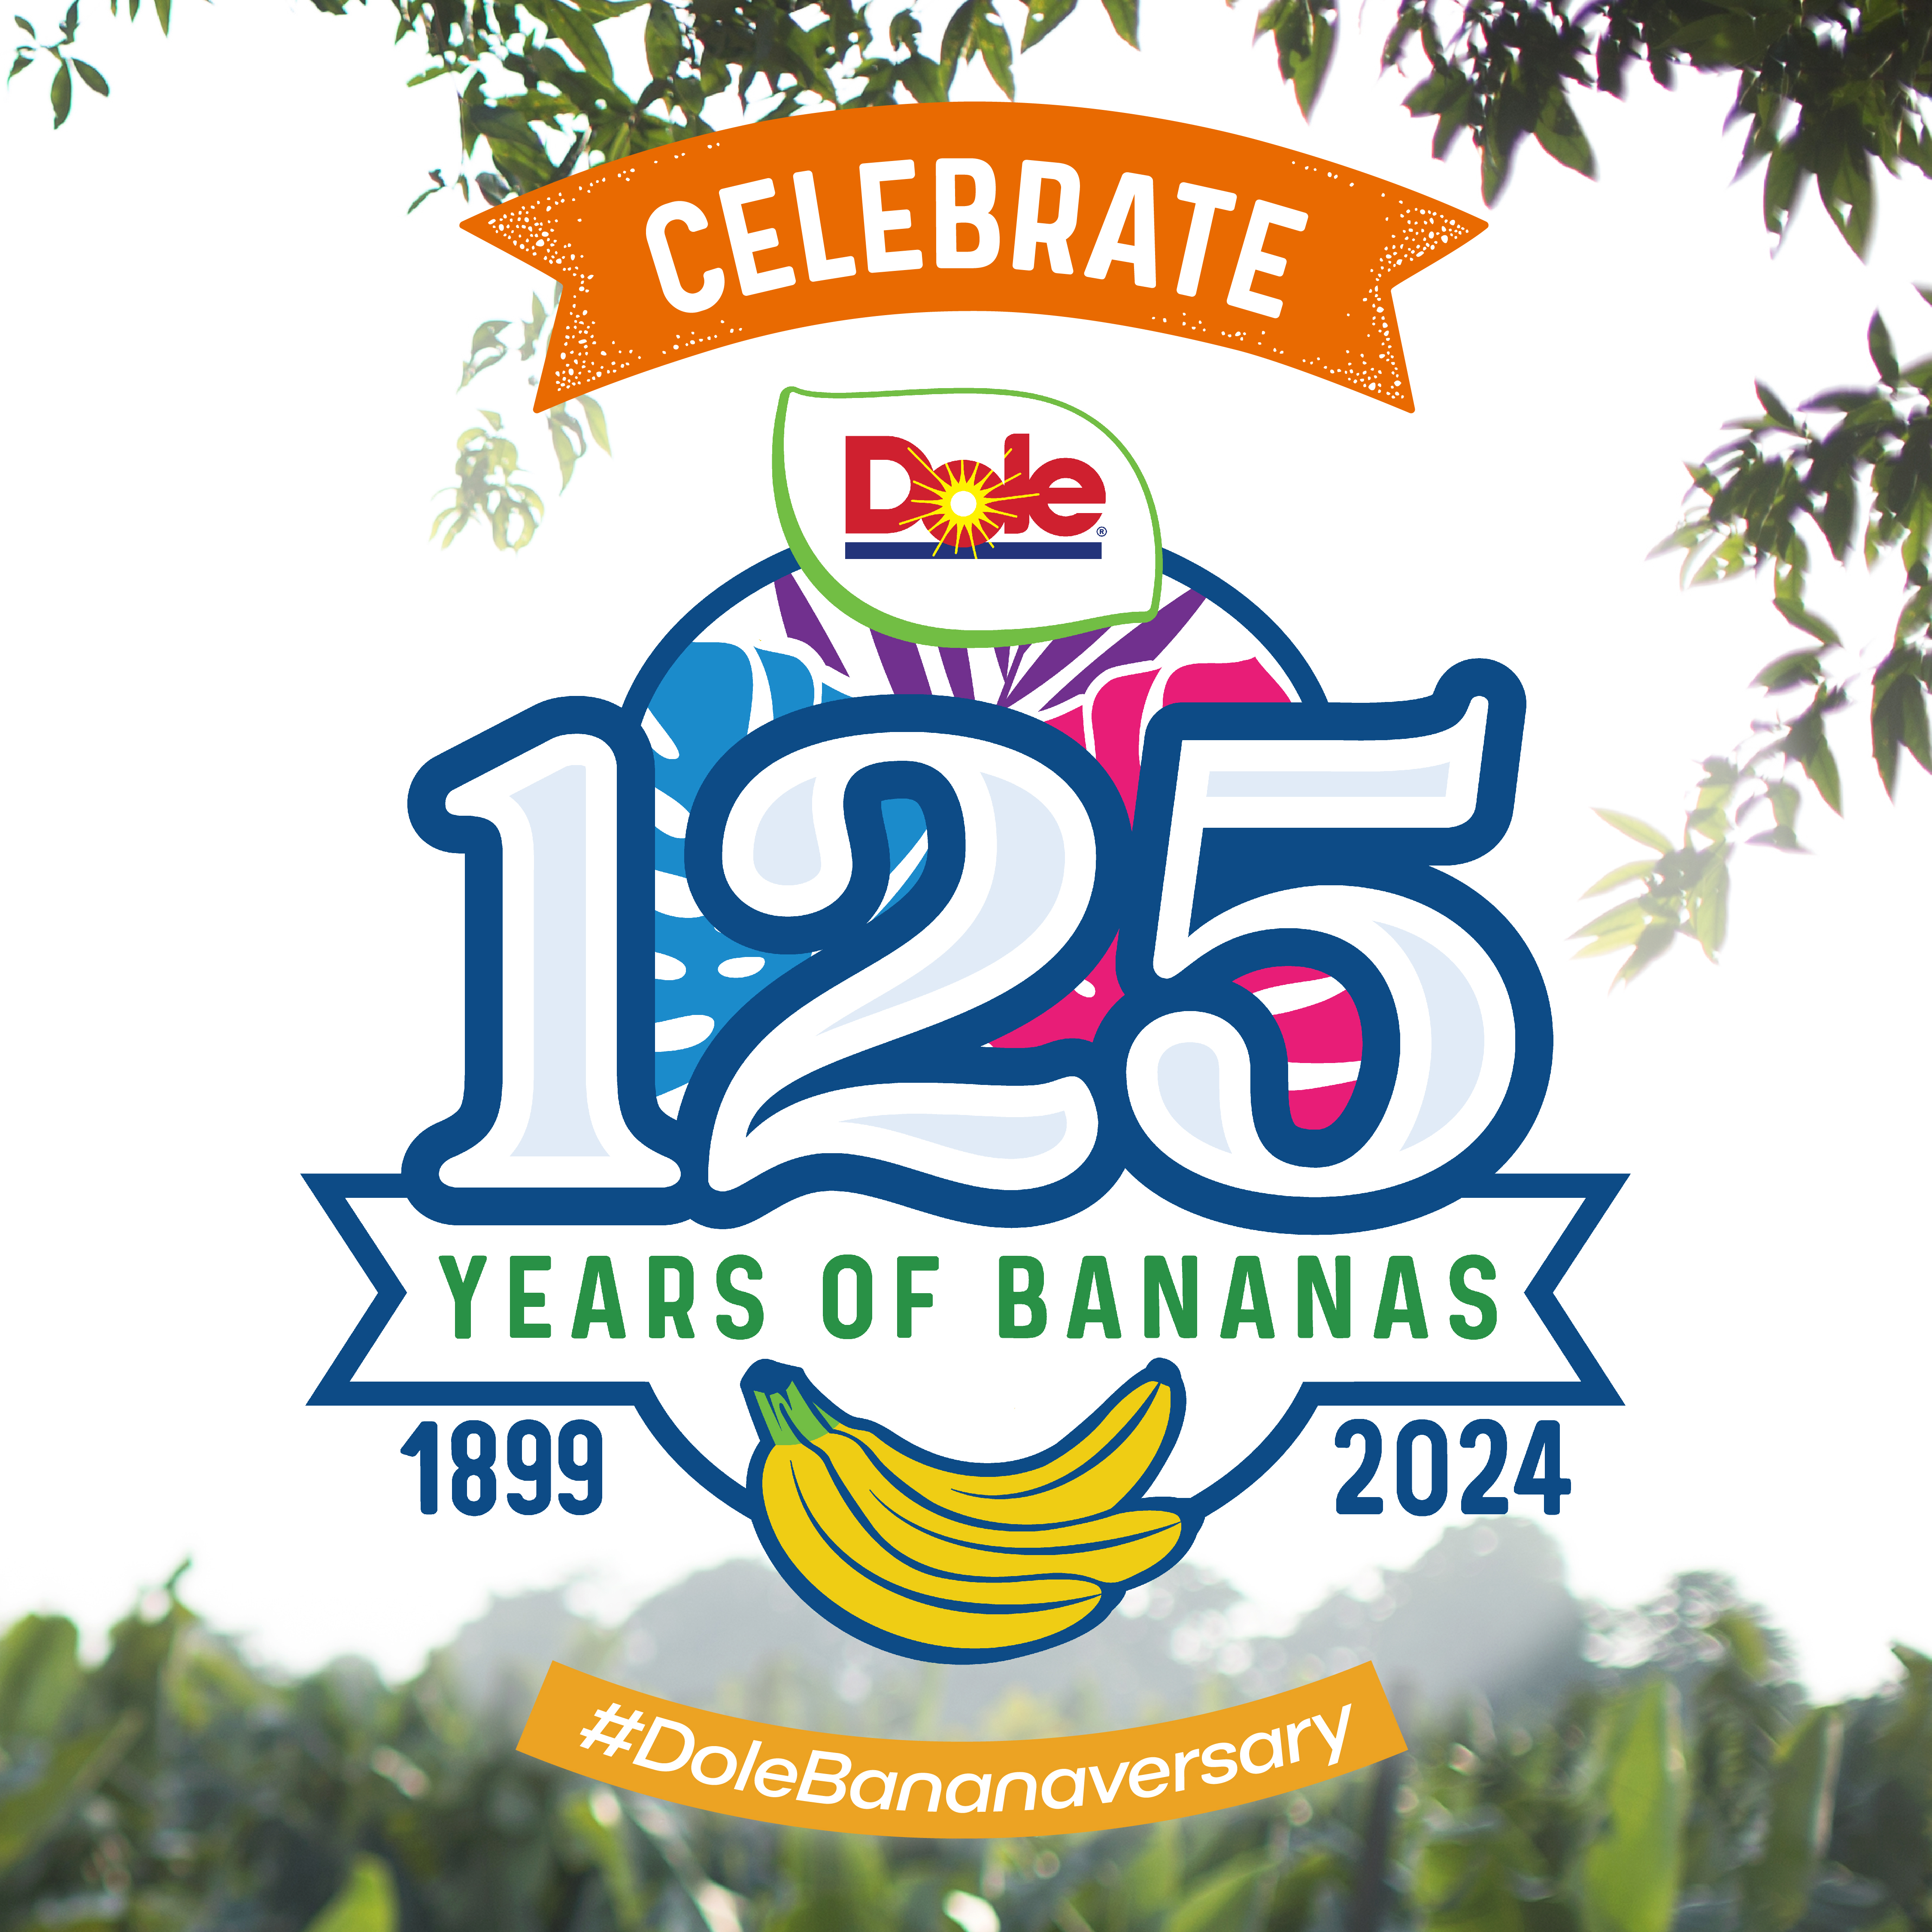 125 Years of Bananas